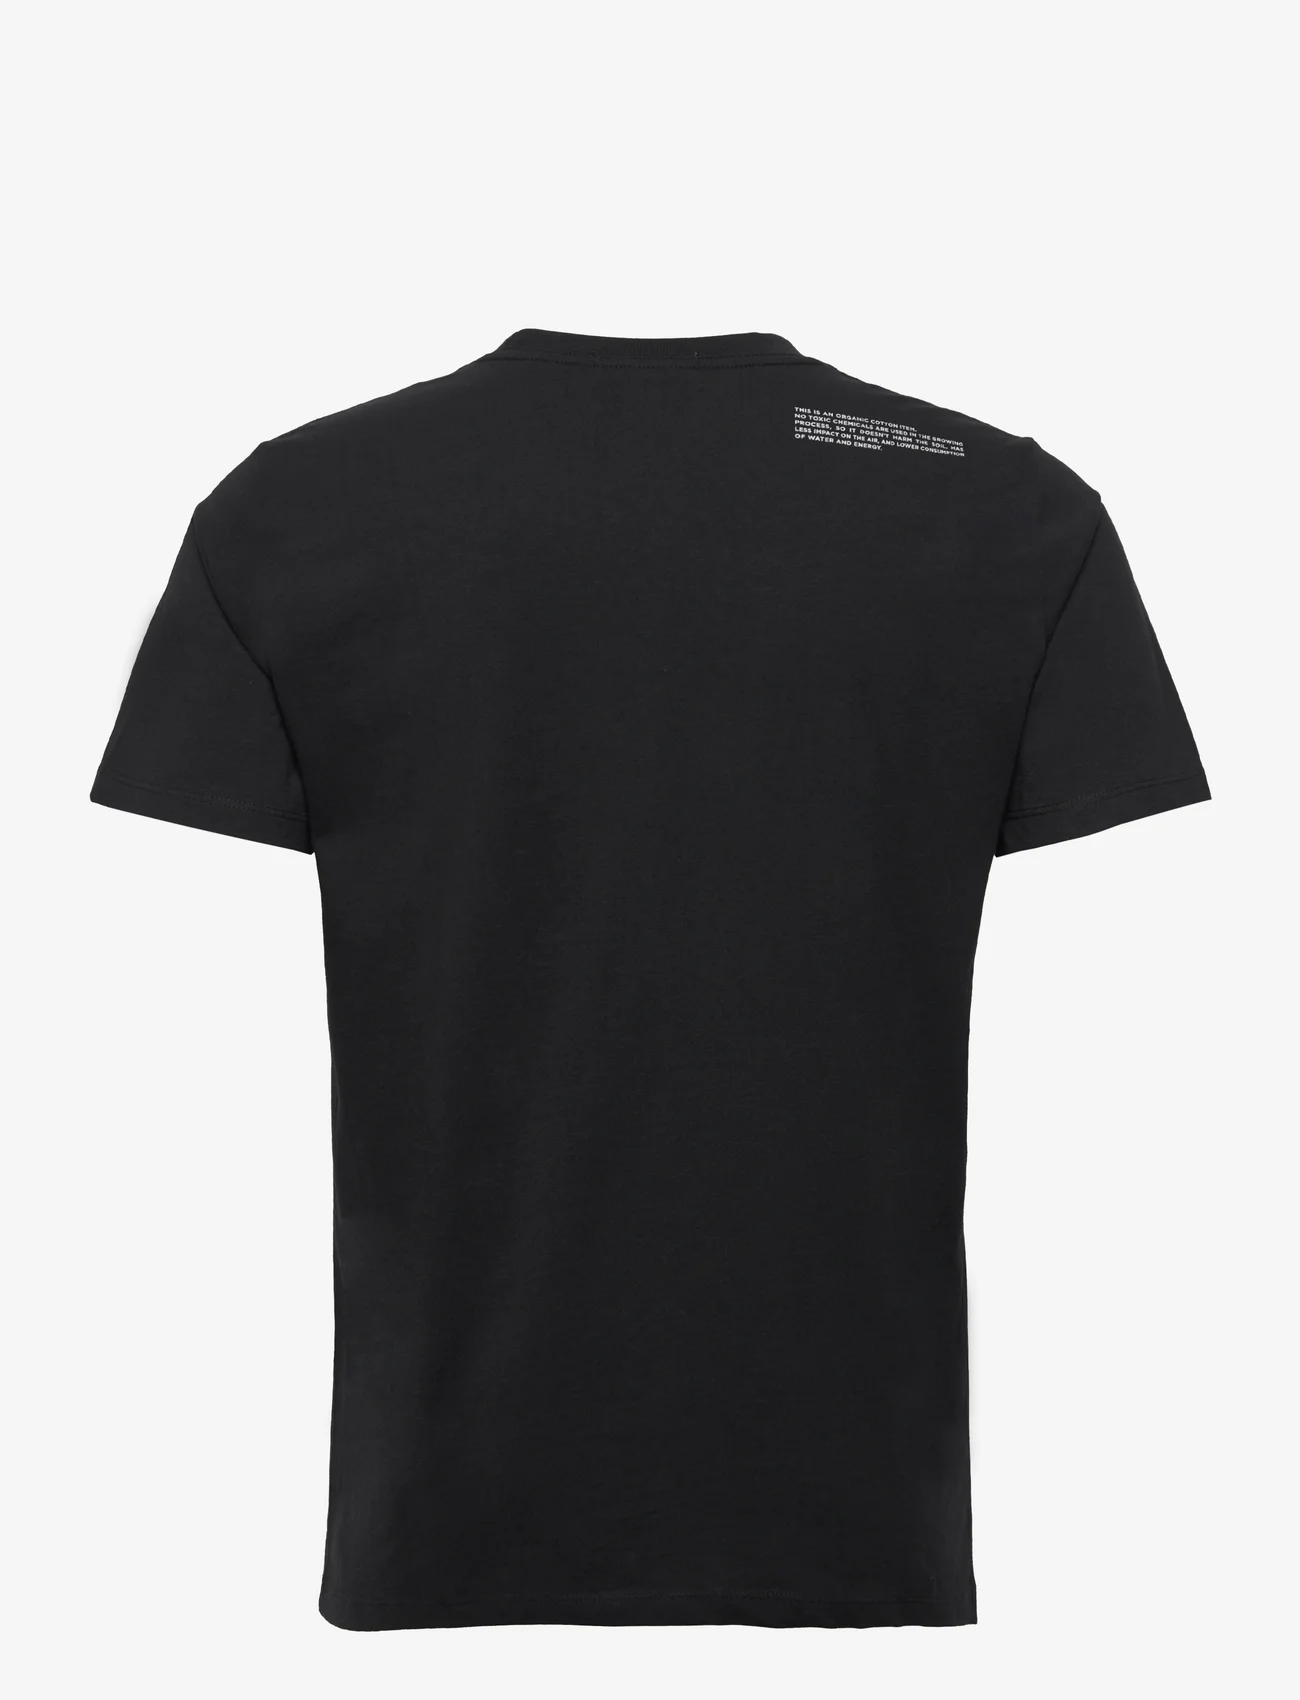 Replay - T-Shirt SECOND LIFE - mažiausios kainos - black - 1